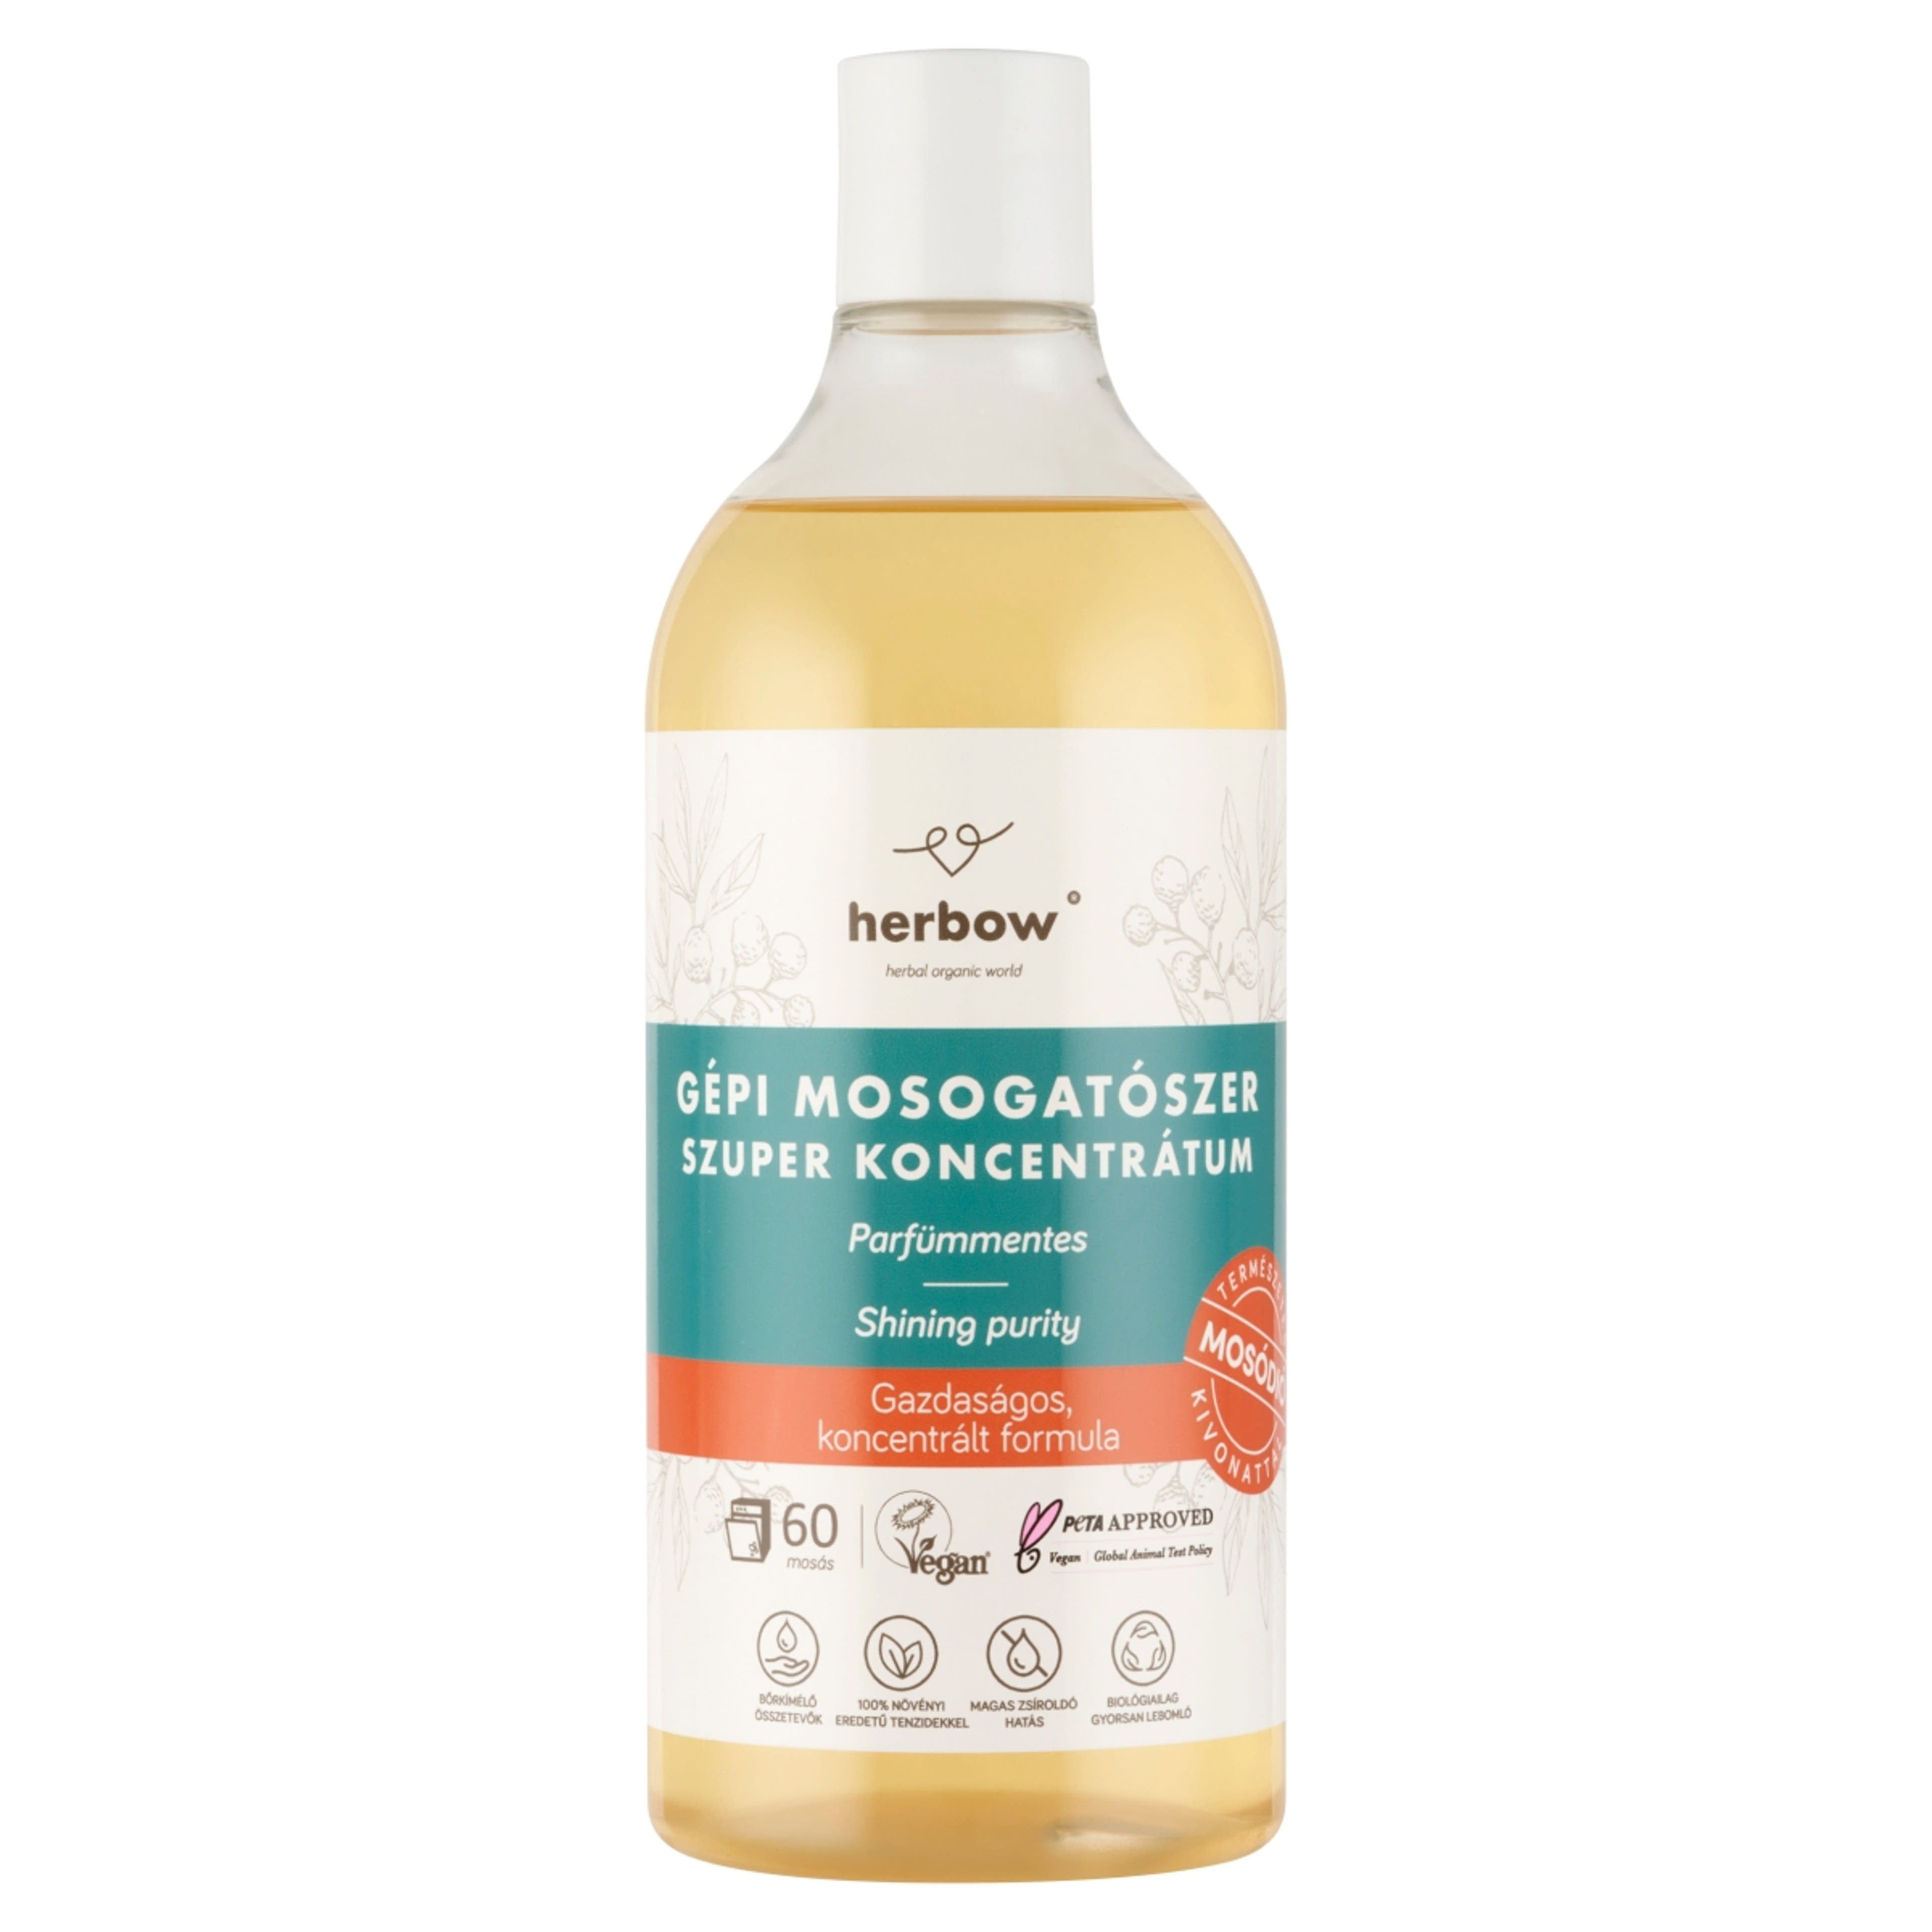 Herbow gépi mosogatószer parfümmentes - 750 ml